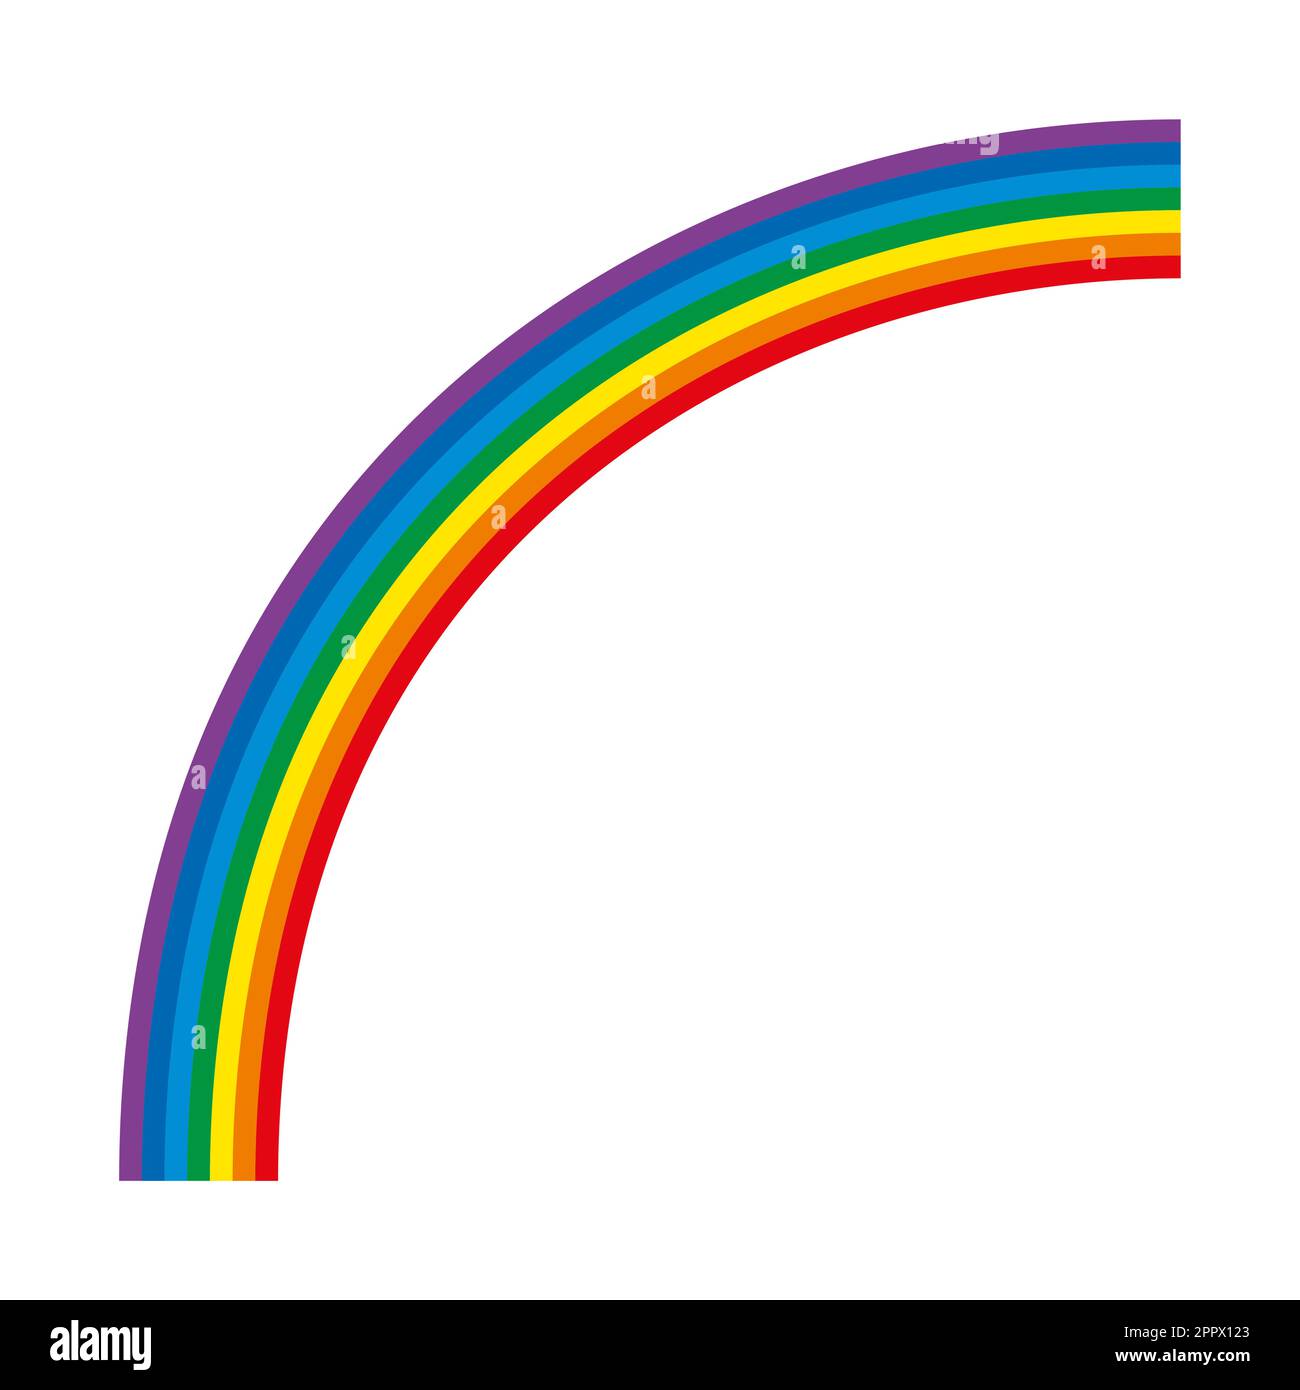 Regenbogen, mehrfarbiger Viertelkreis, Spektrum des sichtbaren Lichts Stock Vektor